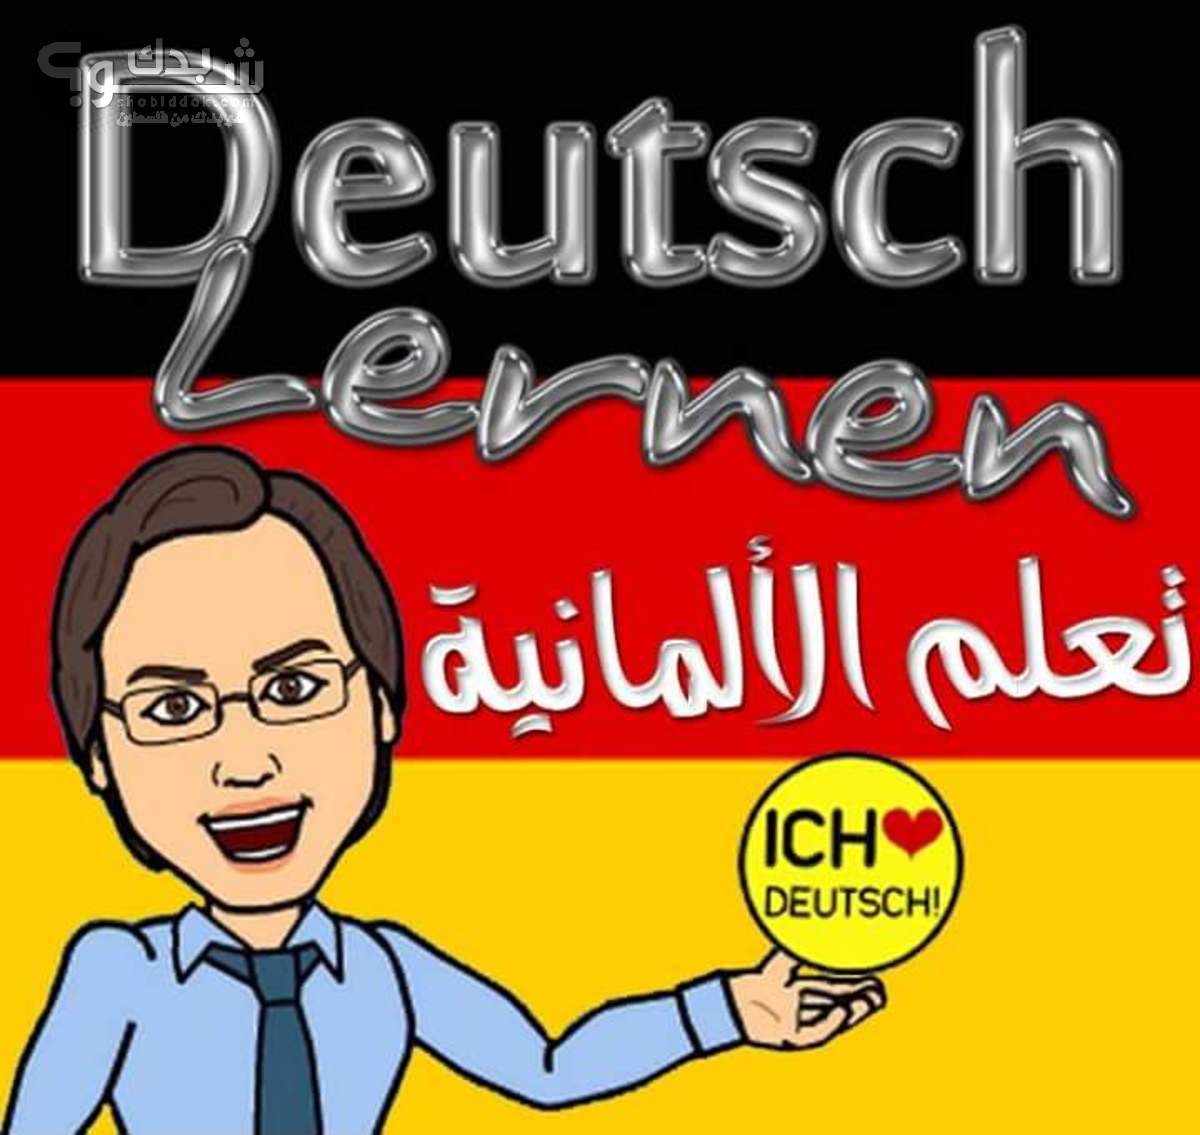 مدرس لغة المانية تدريس اللغة الالمانية لطلبة الثانوية العامة والمدارس التجريبية واعطاء دورات تعليمية